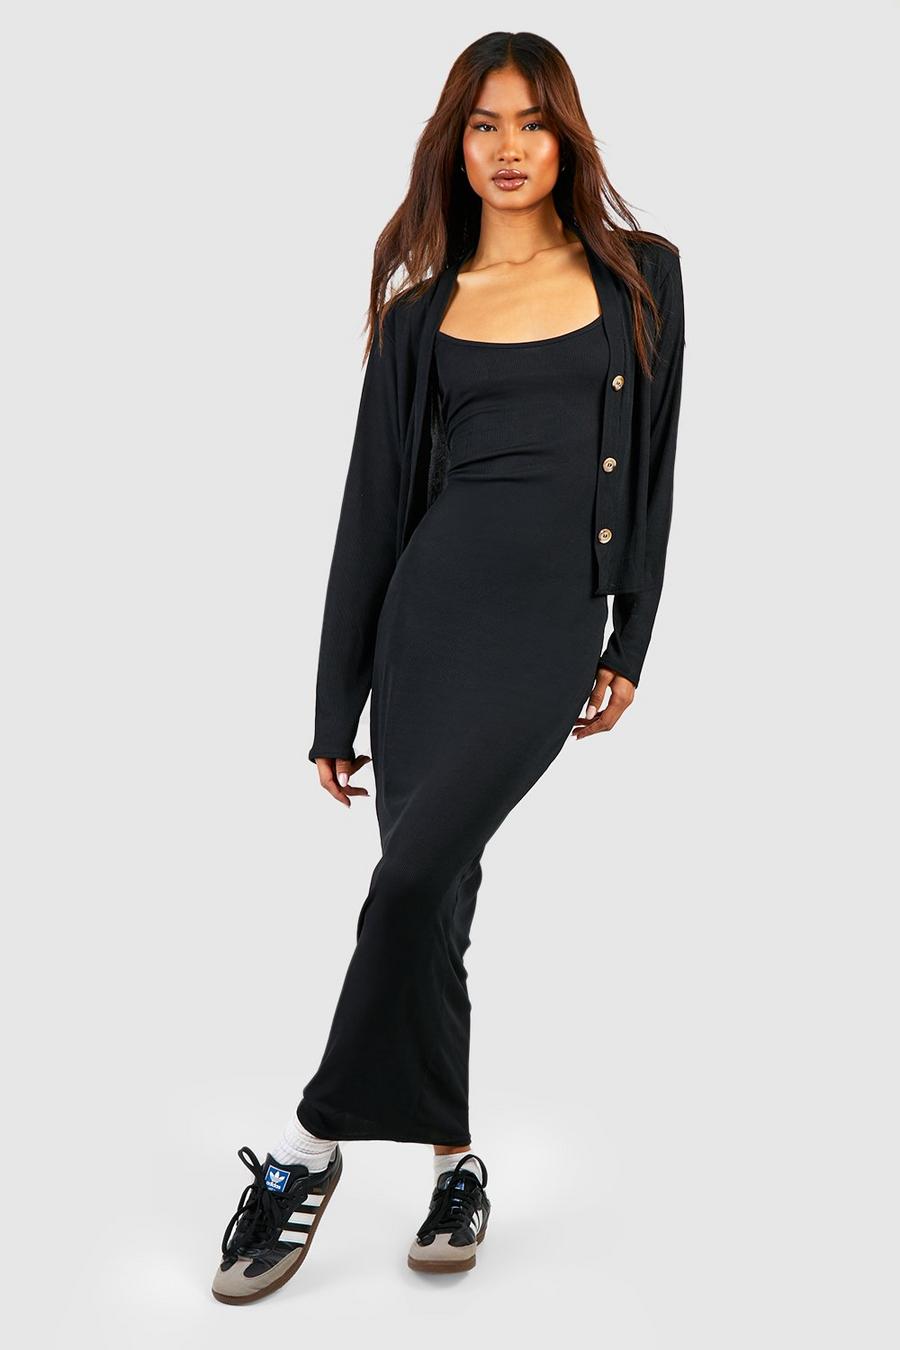 Black Tall Rib Midi Dress With Matching Cardigan